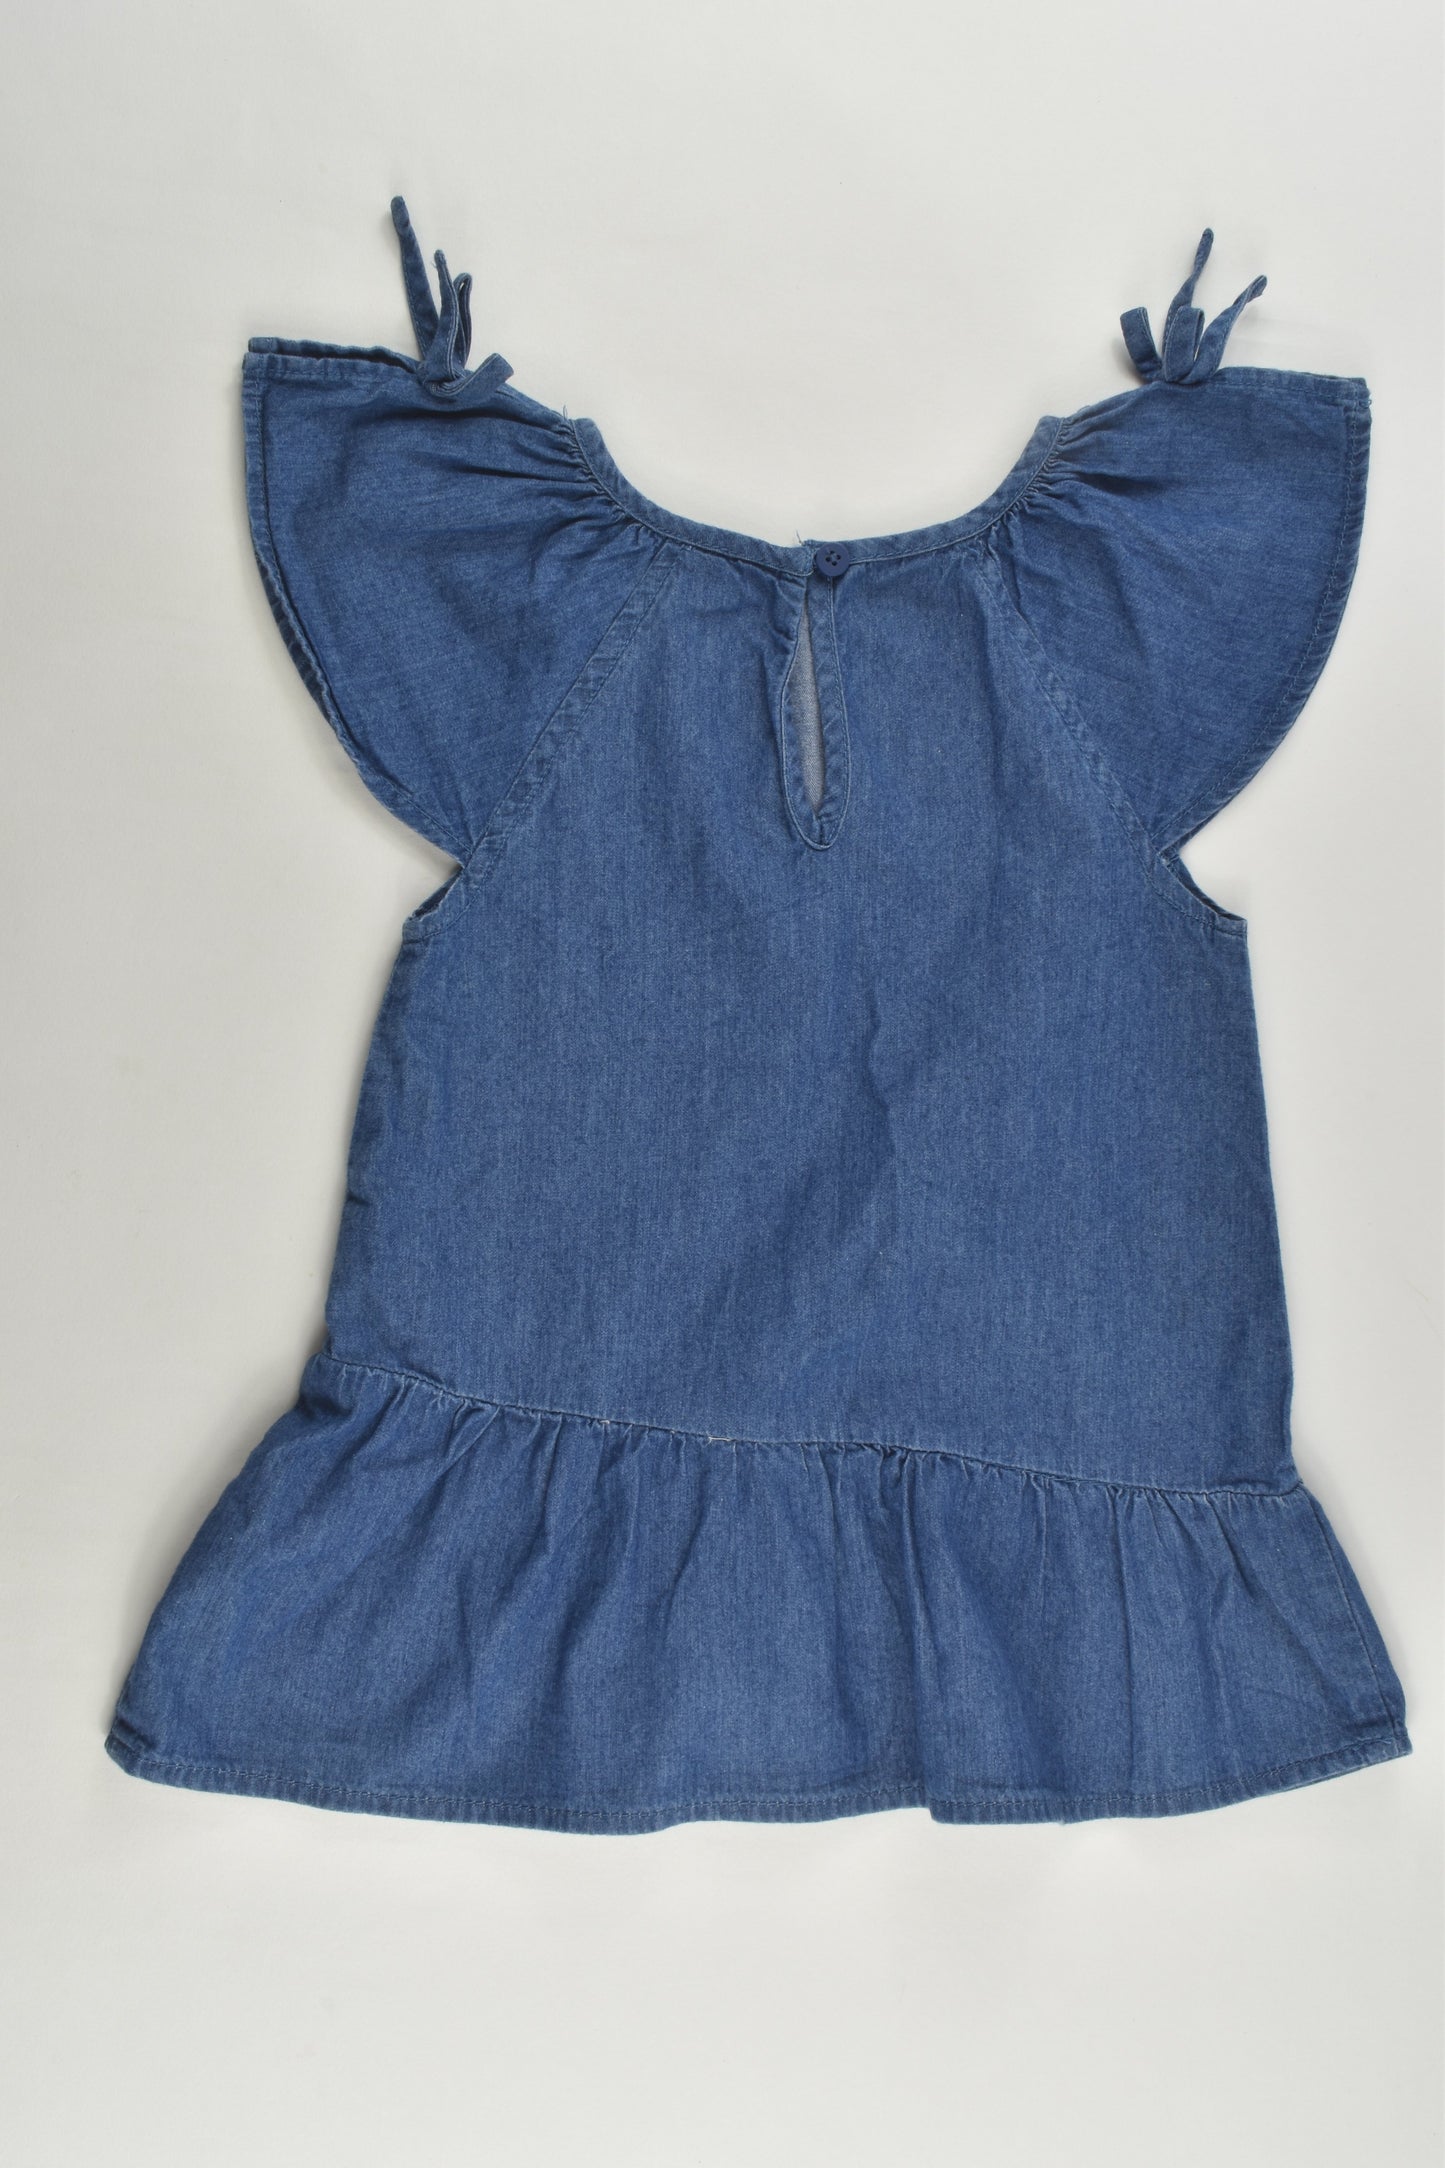 Cotton On Baby Size 0 (6-12 months) Lightweight Denim Dress